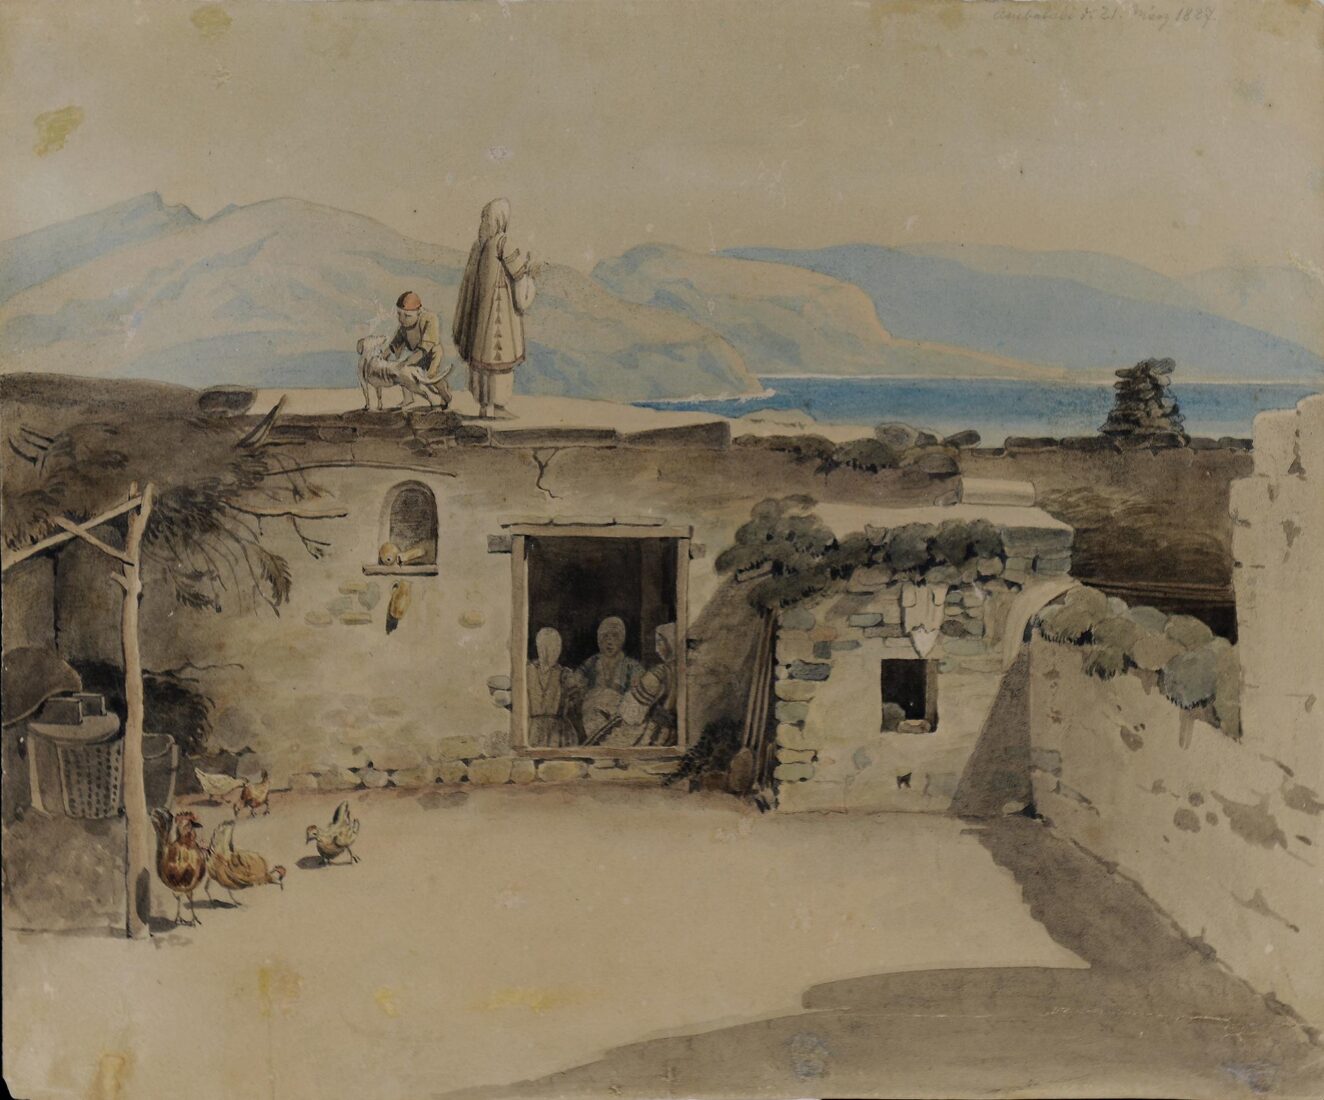 Hut at Ambelakia, Salamis